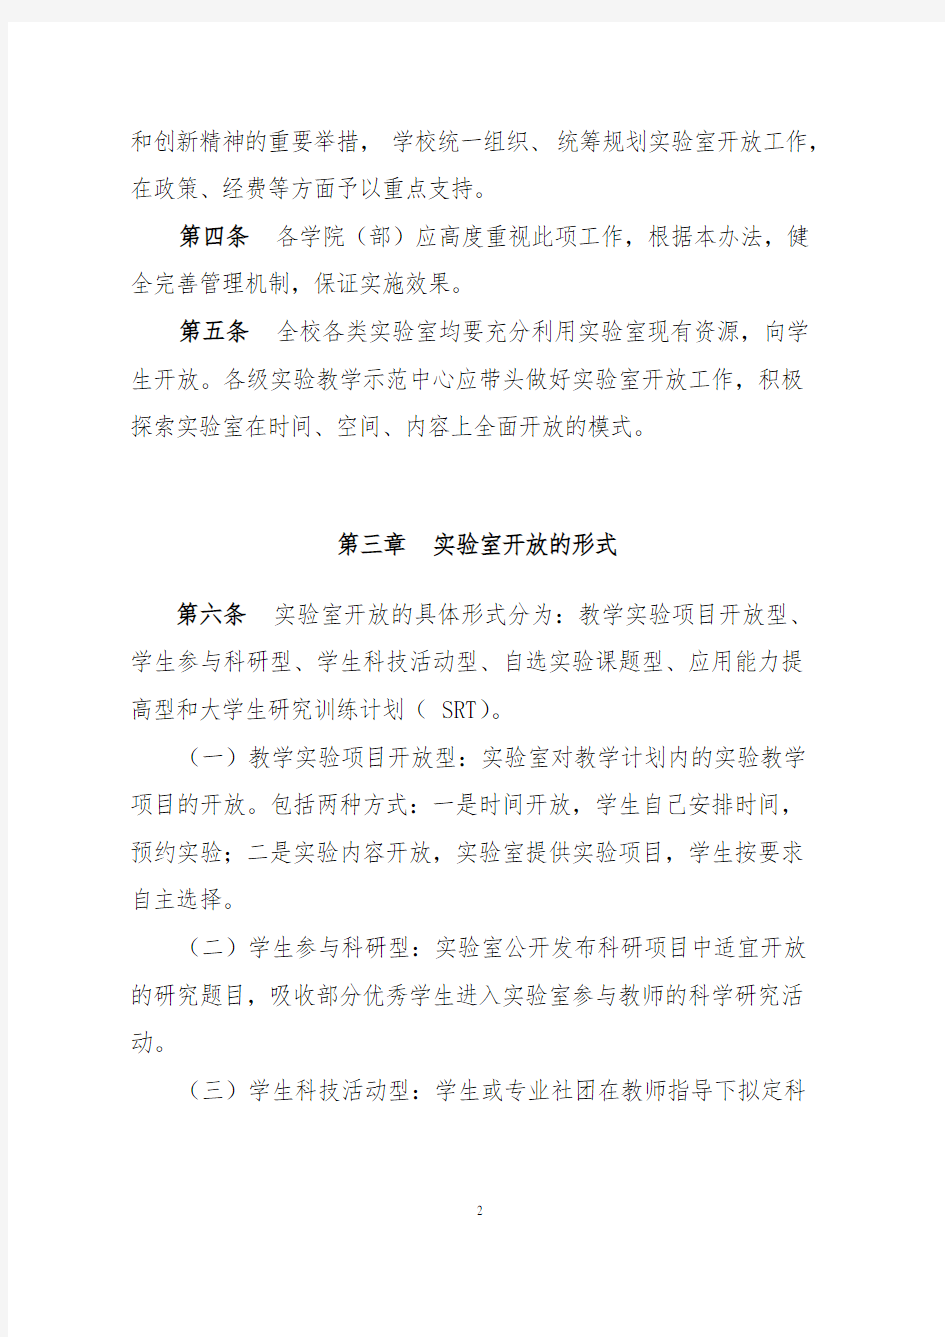 天津商业大学实验室开放管理办法